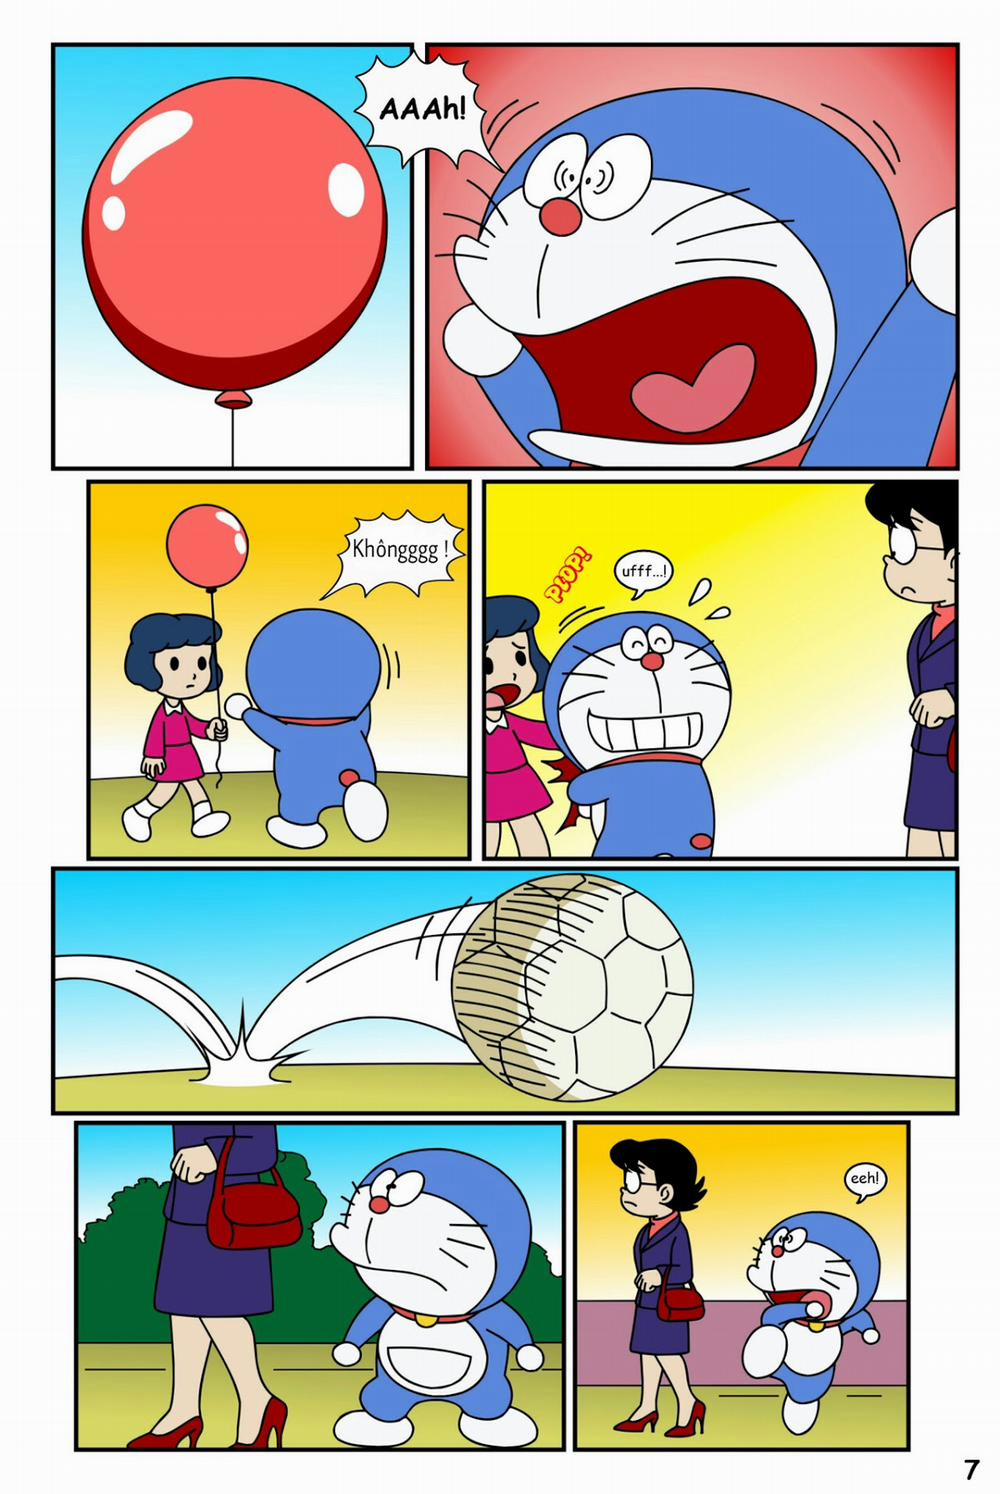 Tuyển Tập Doraemon Doujinshi 18+ Chương 19 Kem ch s i 1 Trang 9